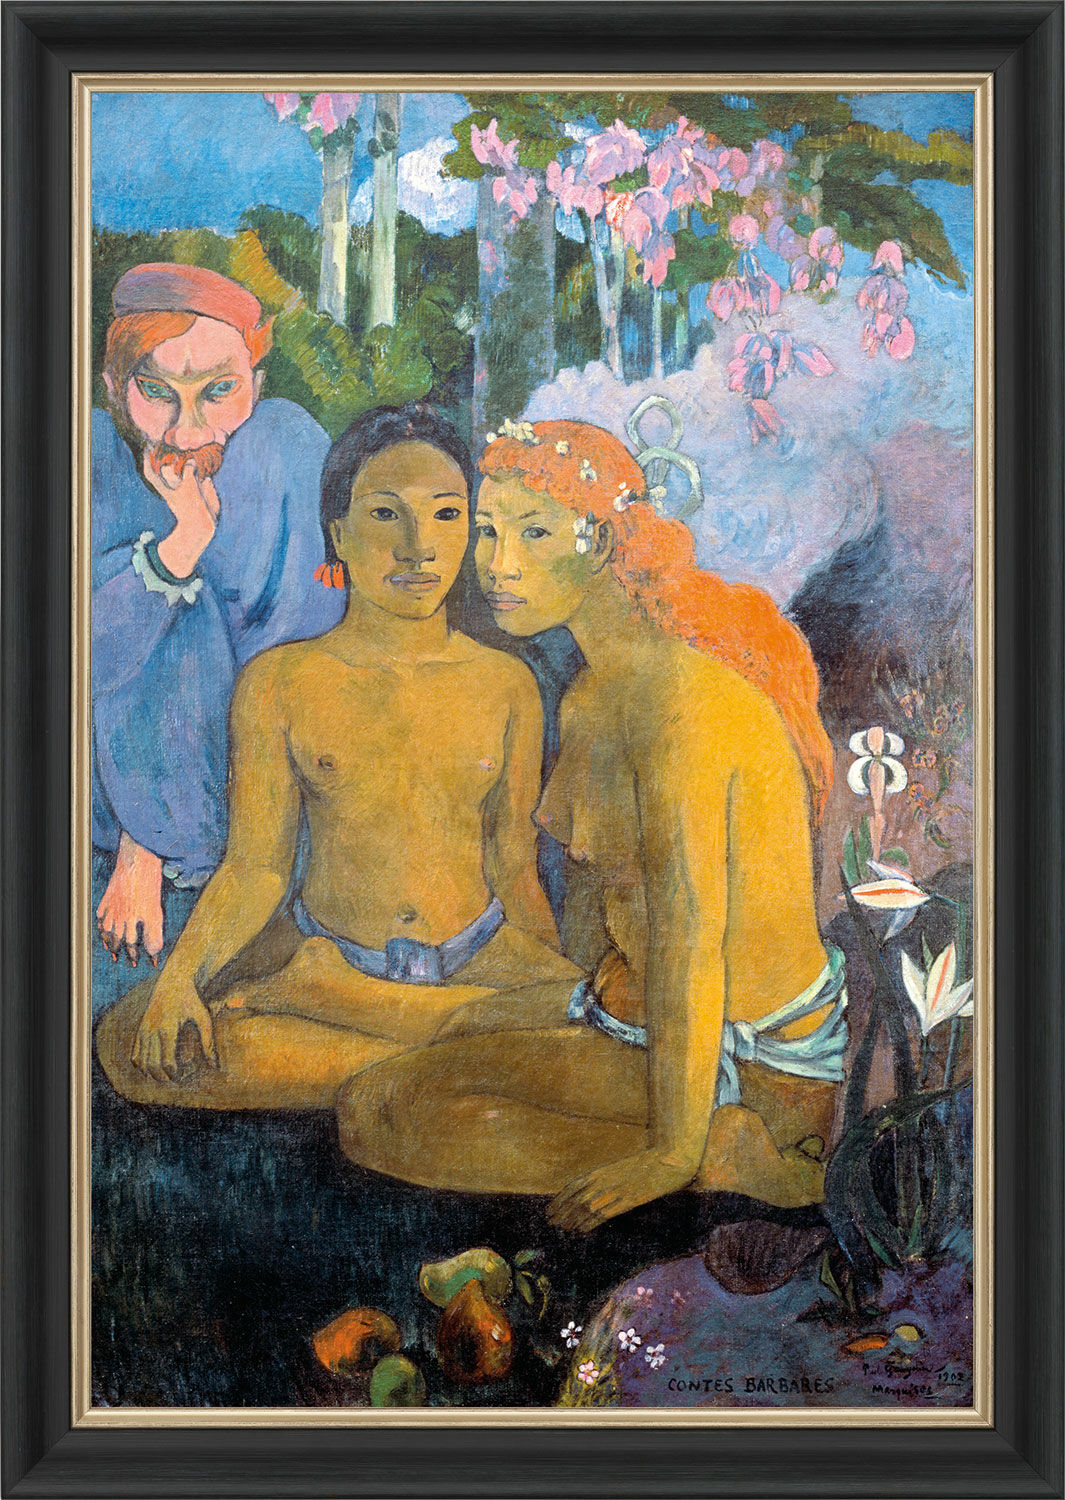 Tableau "Contes Barbares" (1902), encadré von Paul Gauguin